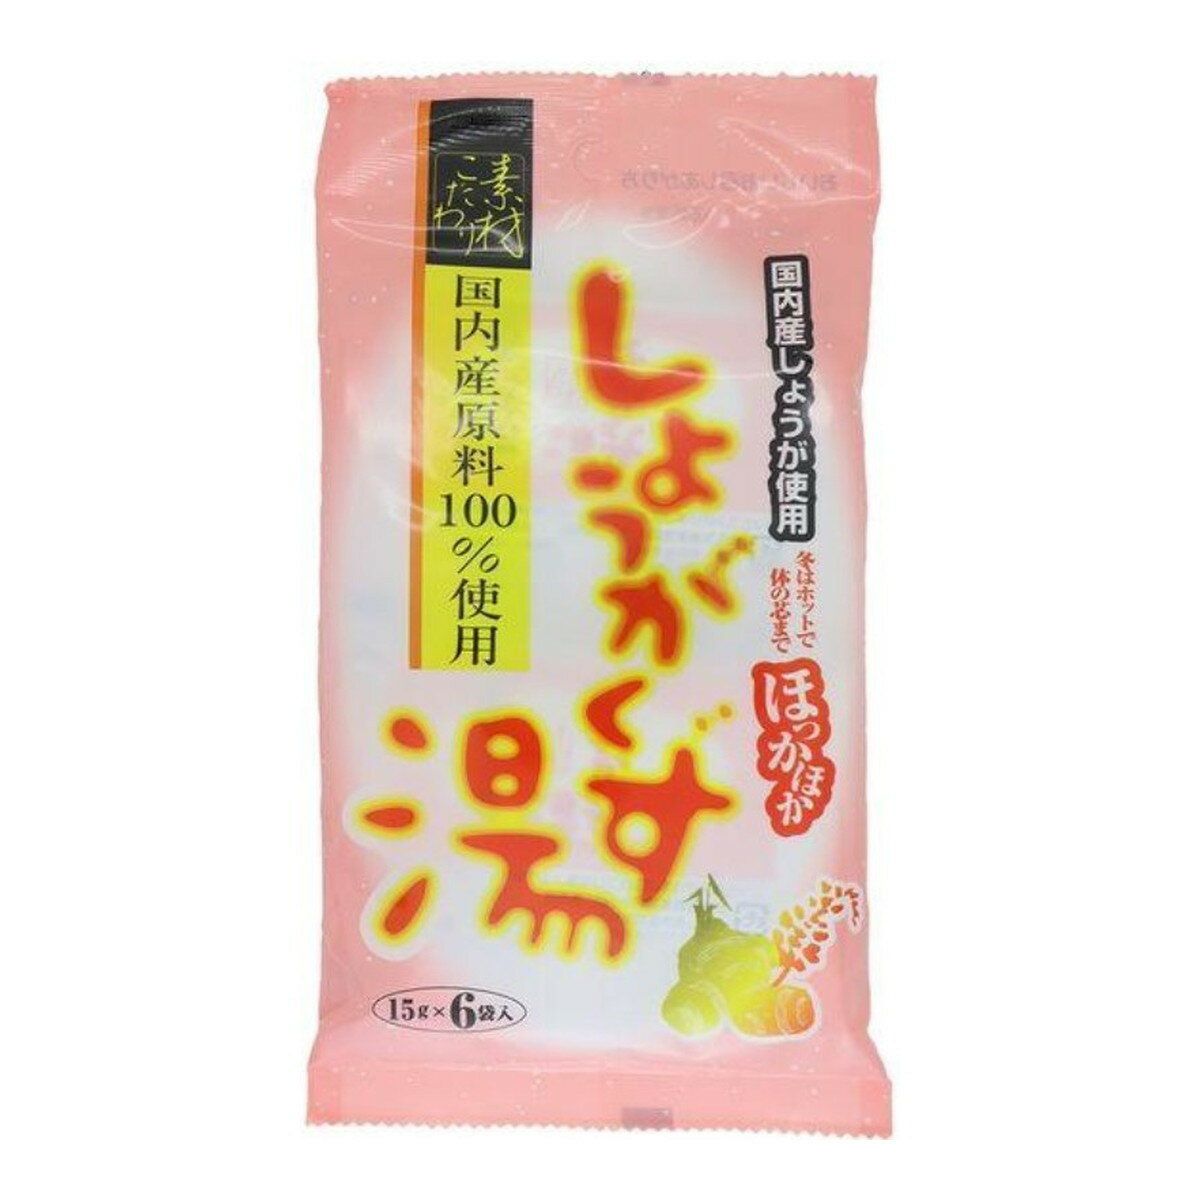 【送料込】今岡製菓 しょうがくず湯 90g(15g×6袋) 1個